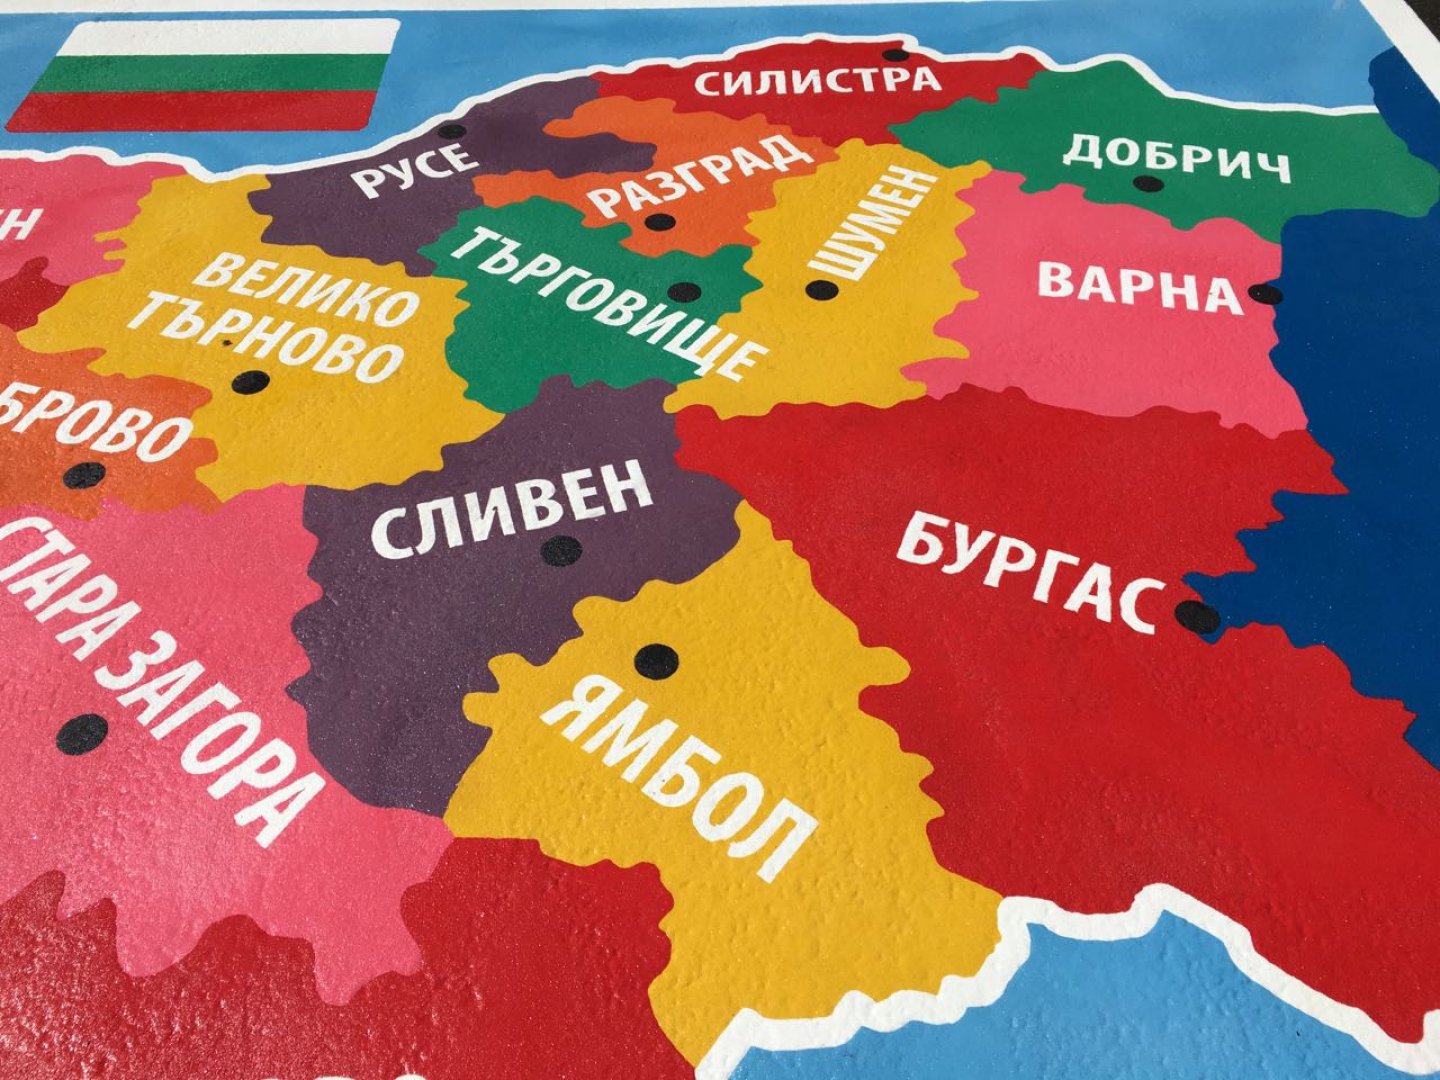 С игра запознават бургаските деца с картата на България, слънчевата система и правилата за движение - E-Burgas.com